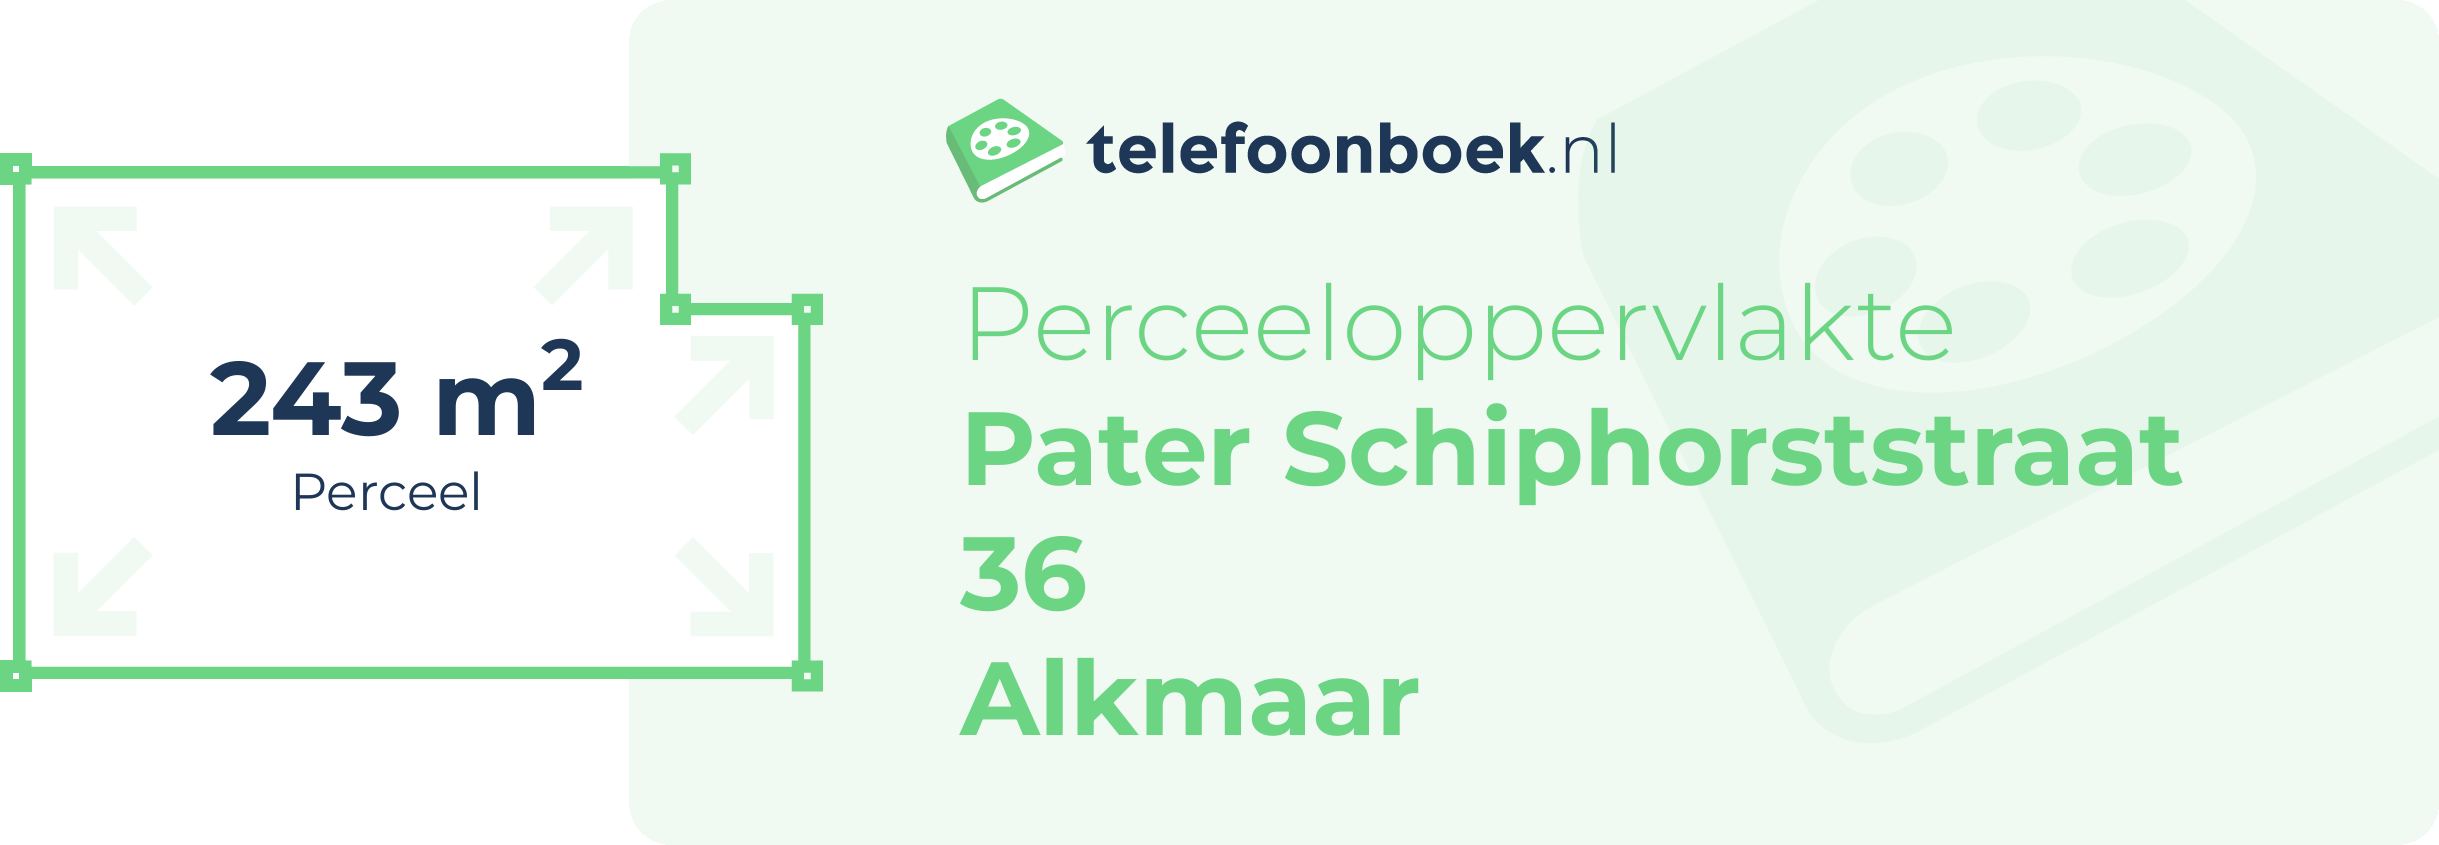 Perceeloppervlakte Pater Schiphorststraat 36 Alkmaar